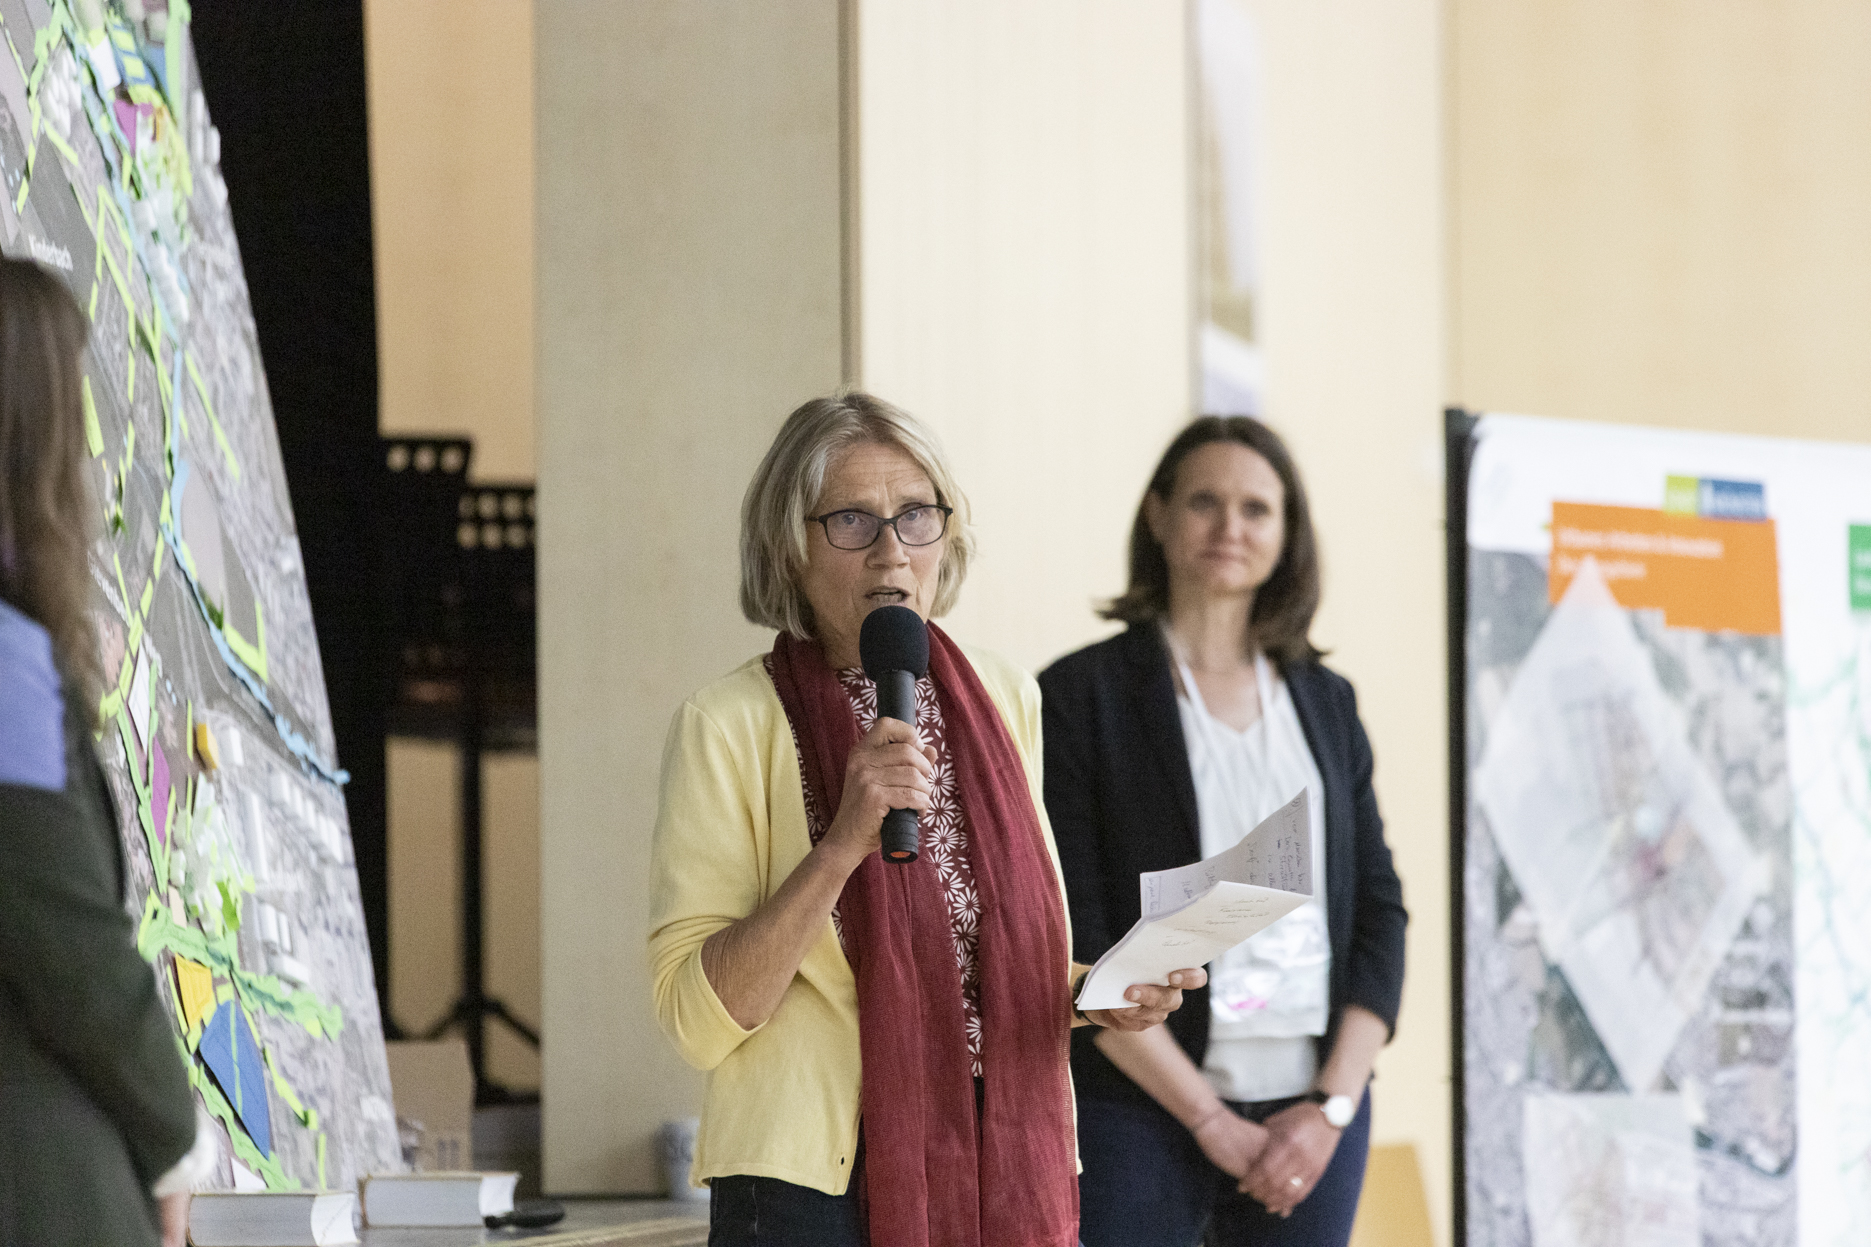 Prof. Dr. Petra Teitscheid, Nadine Radtke und Svenja Henning präsentieren die Ergebnisse des Teams 3 "Vielfalt & Zusammenleben"